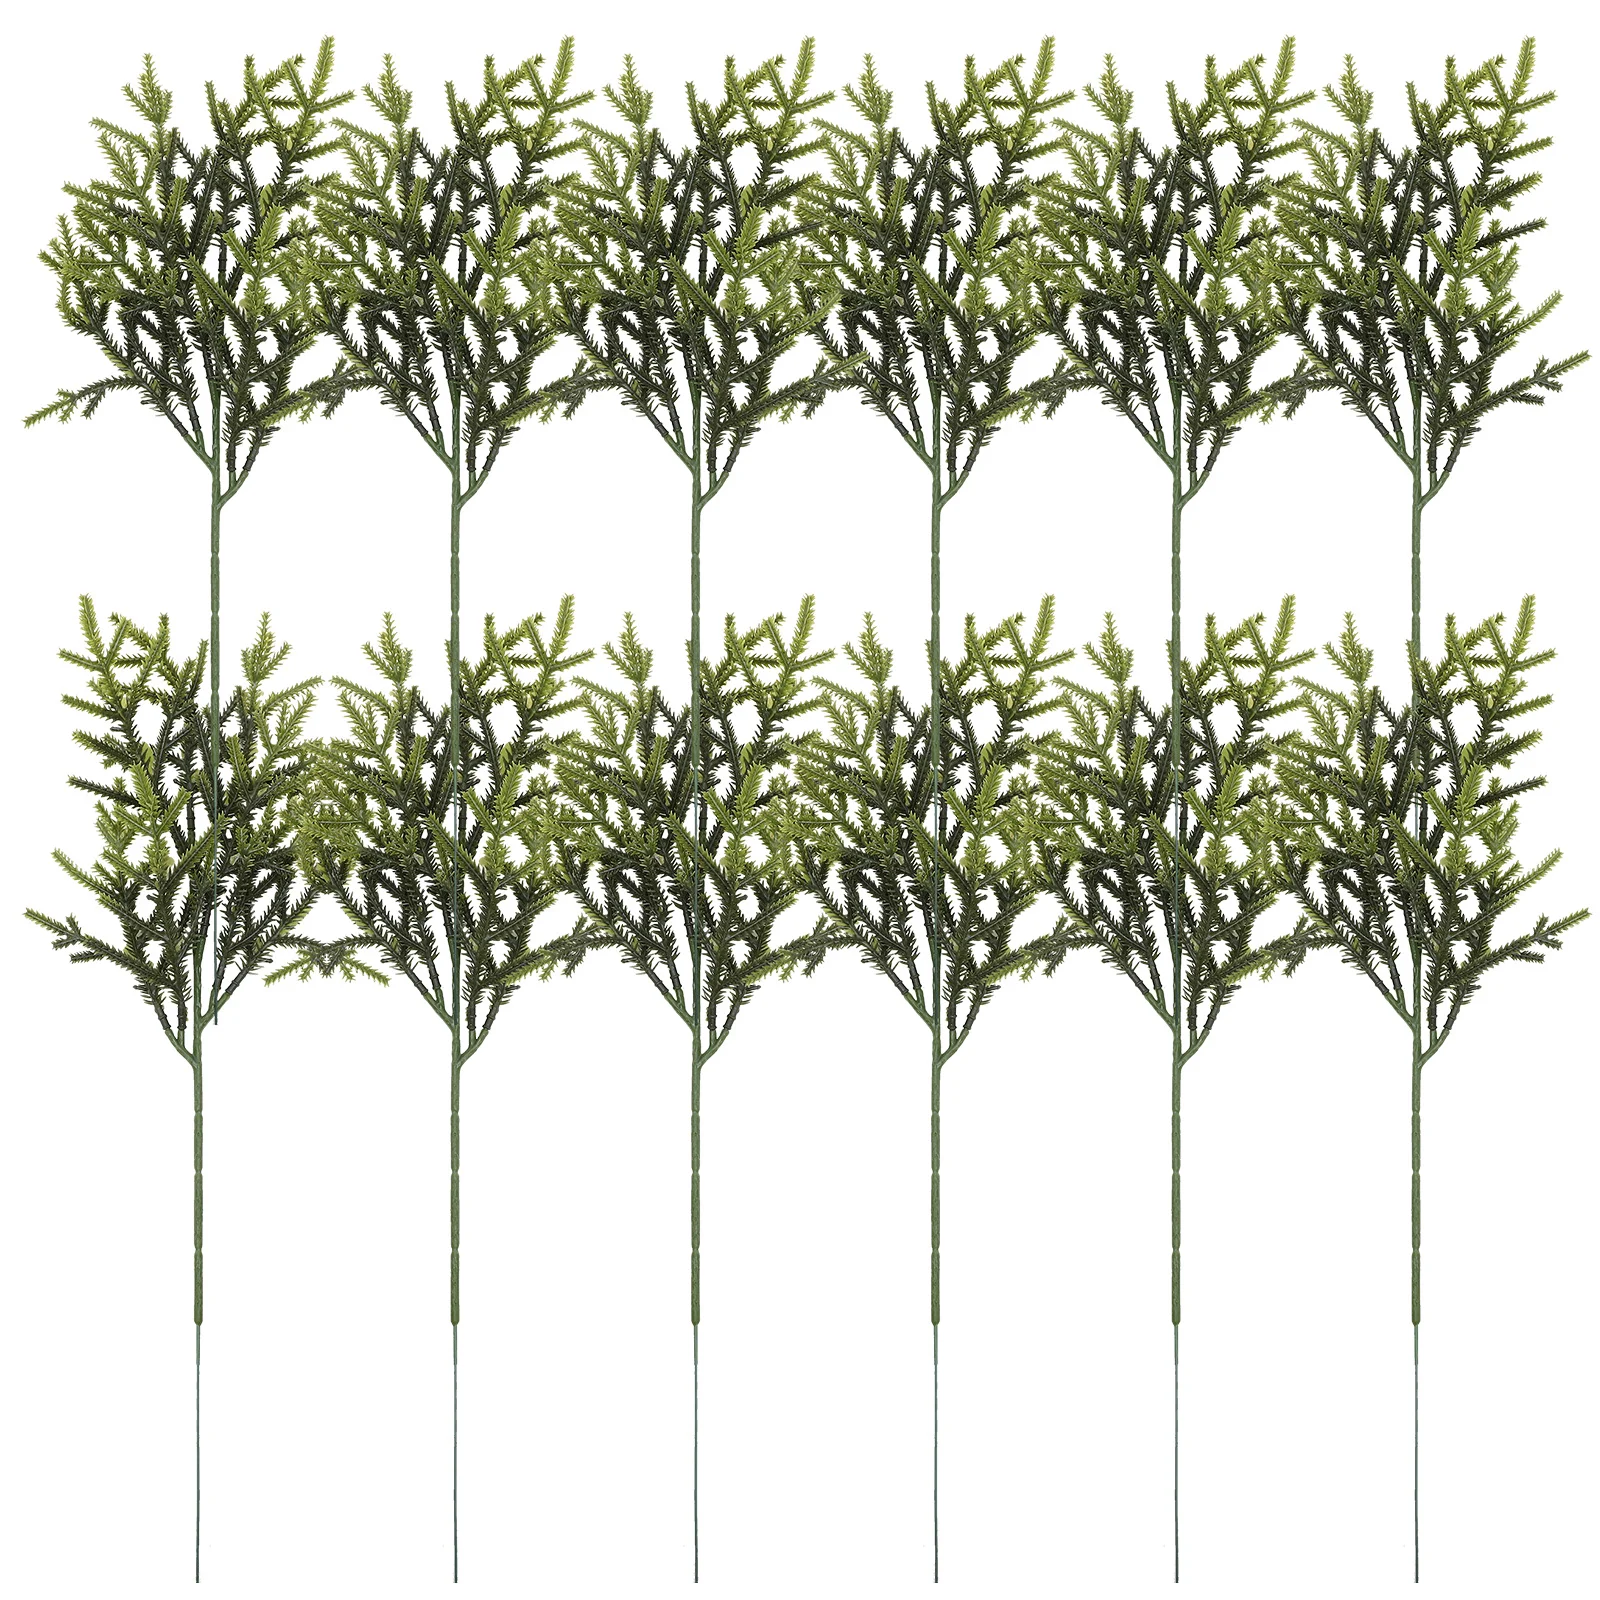 

12Pcs DIY Pine Needles Branches Pine Picks Christmas Fake Greenery Pine Picks for DIY Garlands